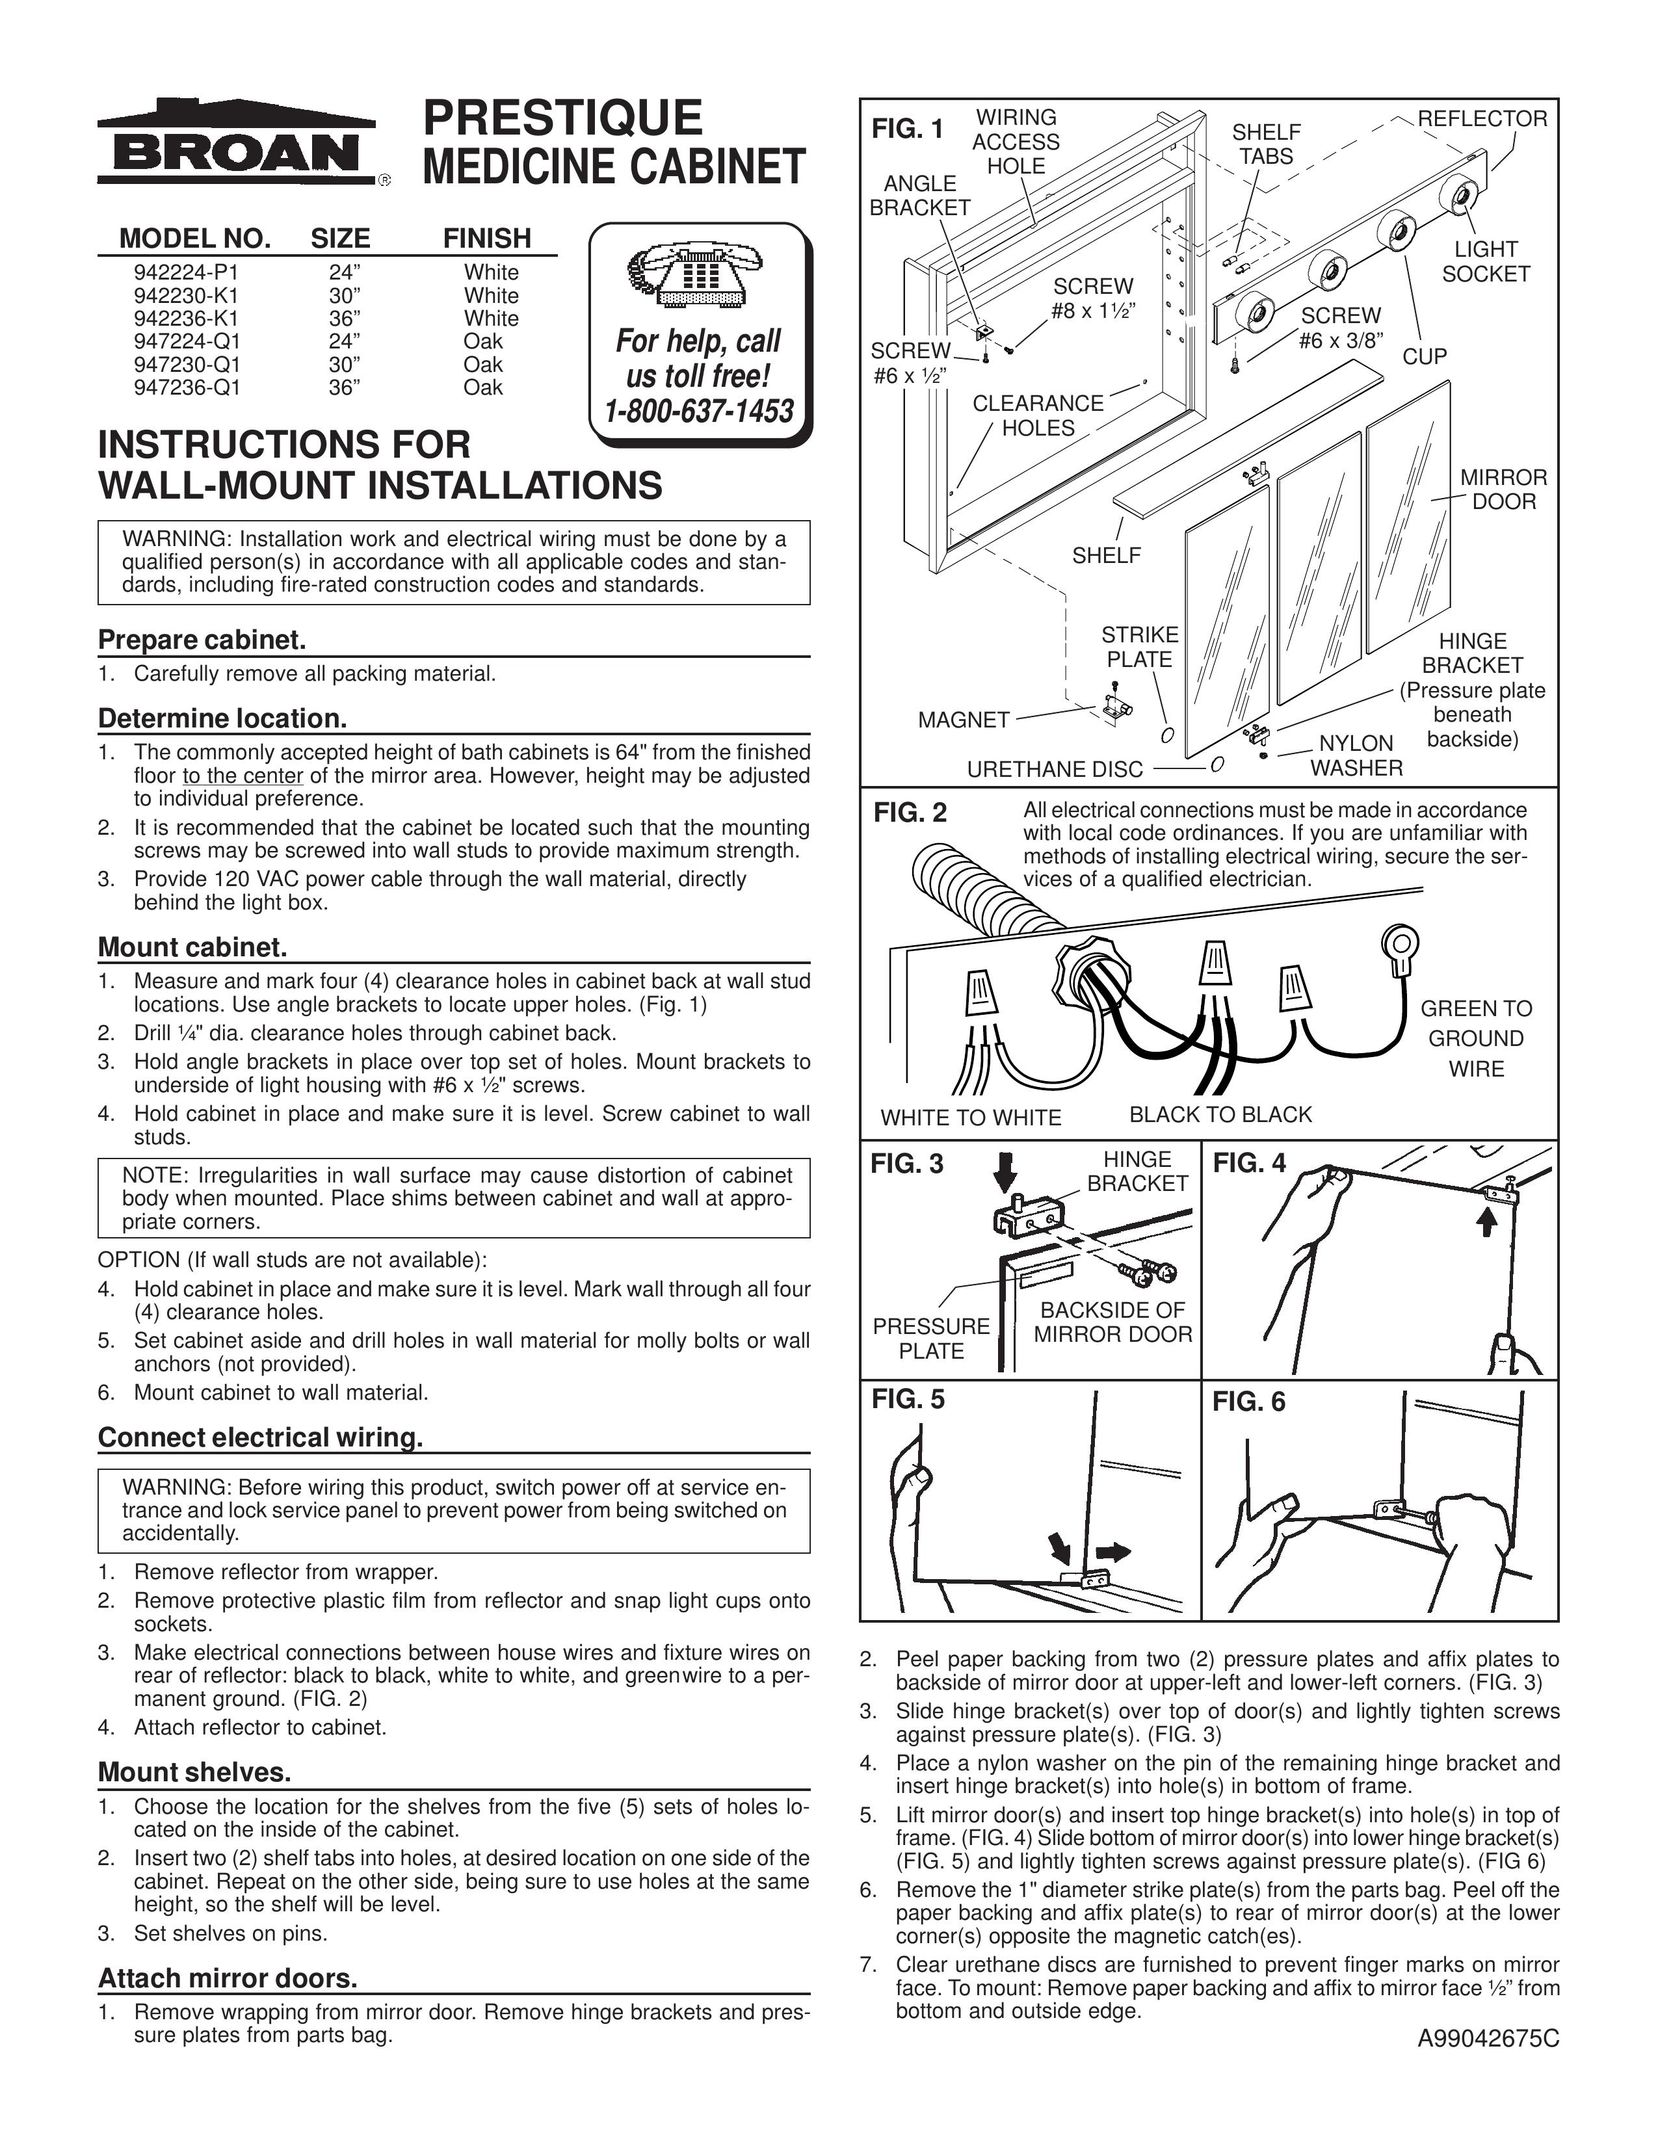 Broan 942236-K1 TV Mount User Manual